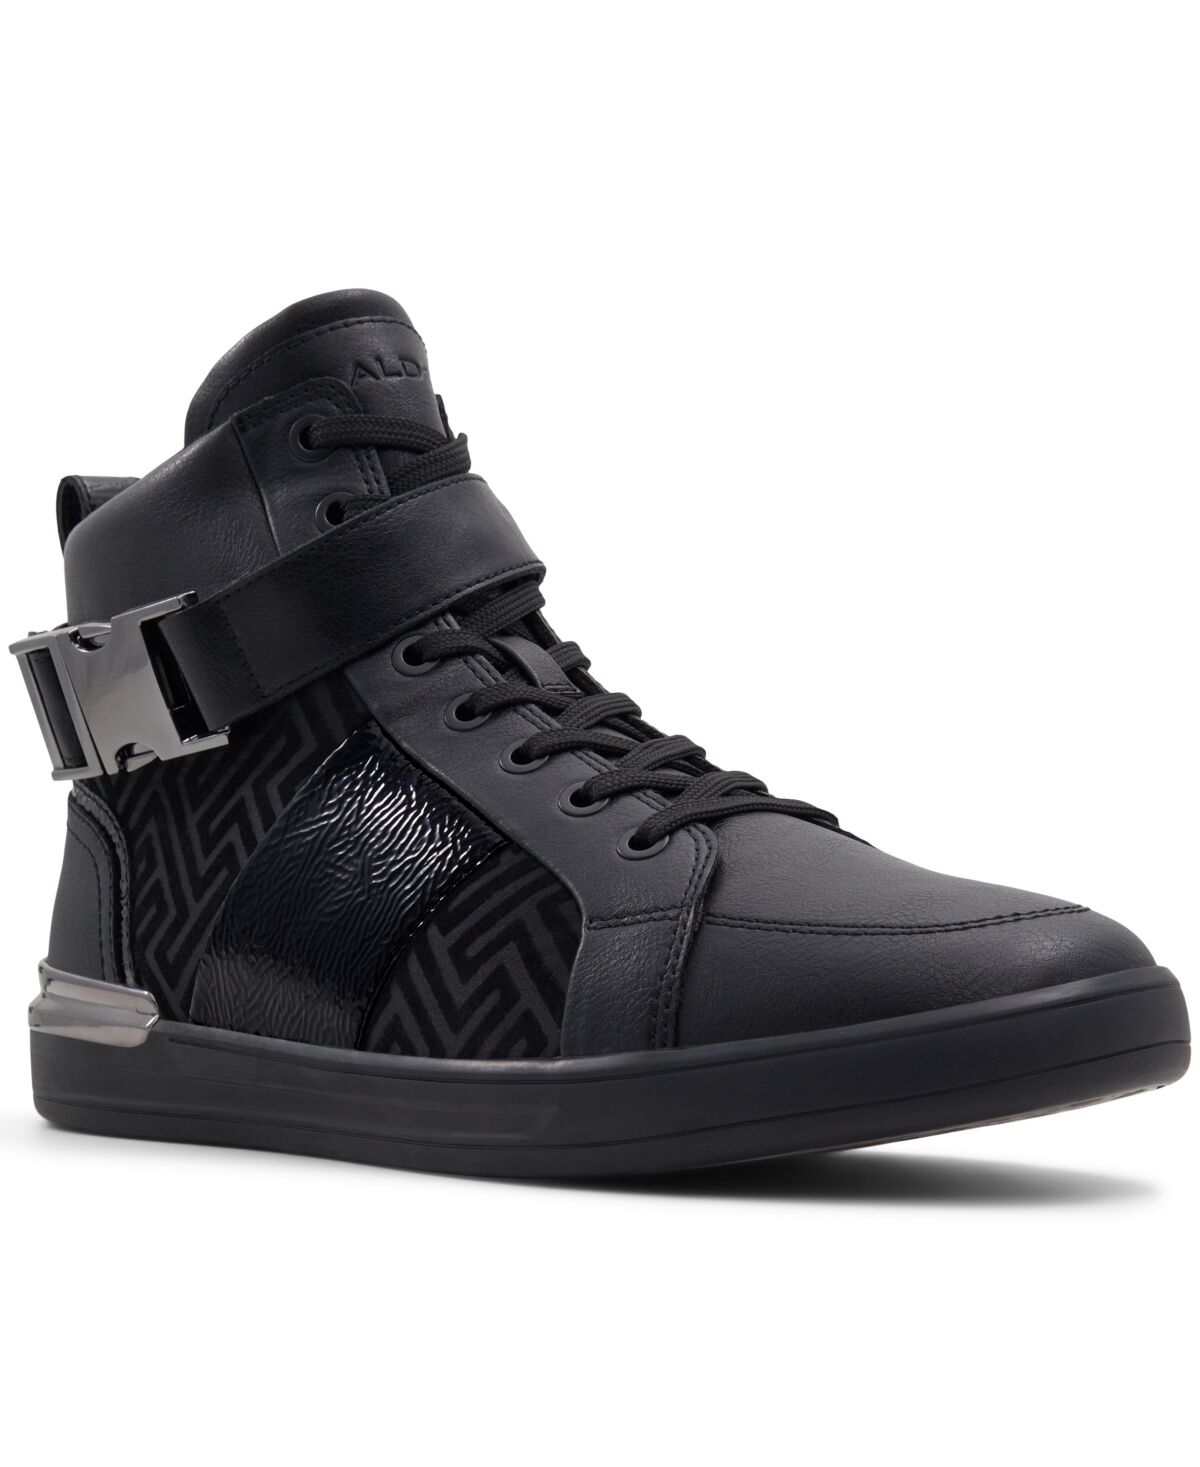 Aldo Men's Brauerr Fashion Athletic Shoes - Other Black